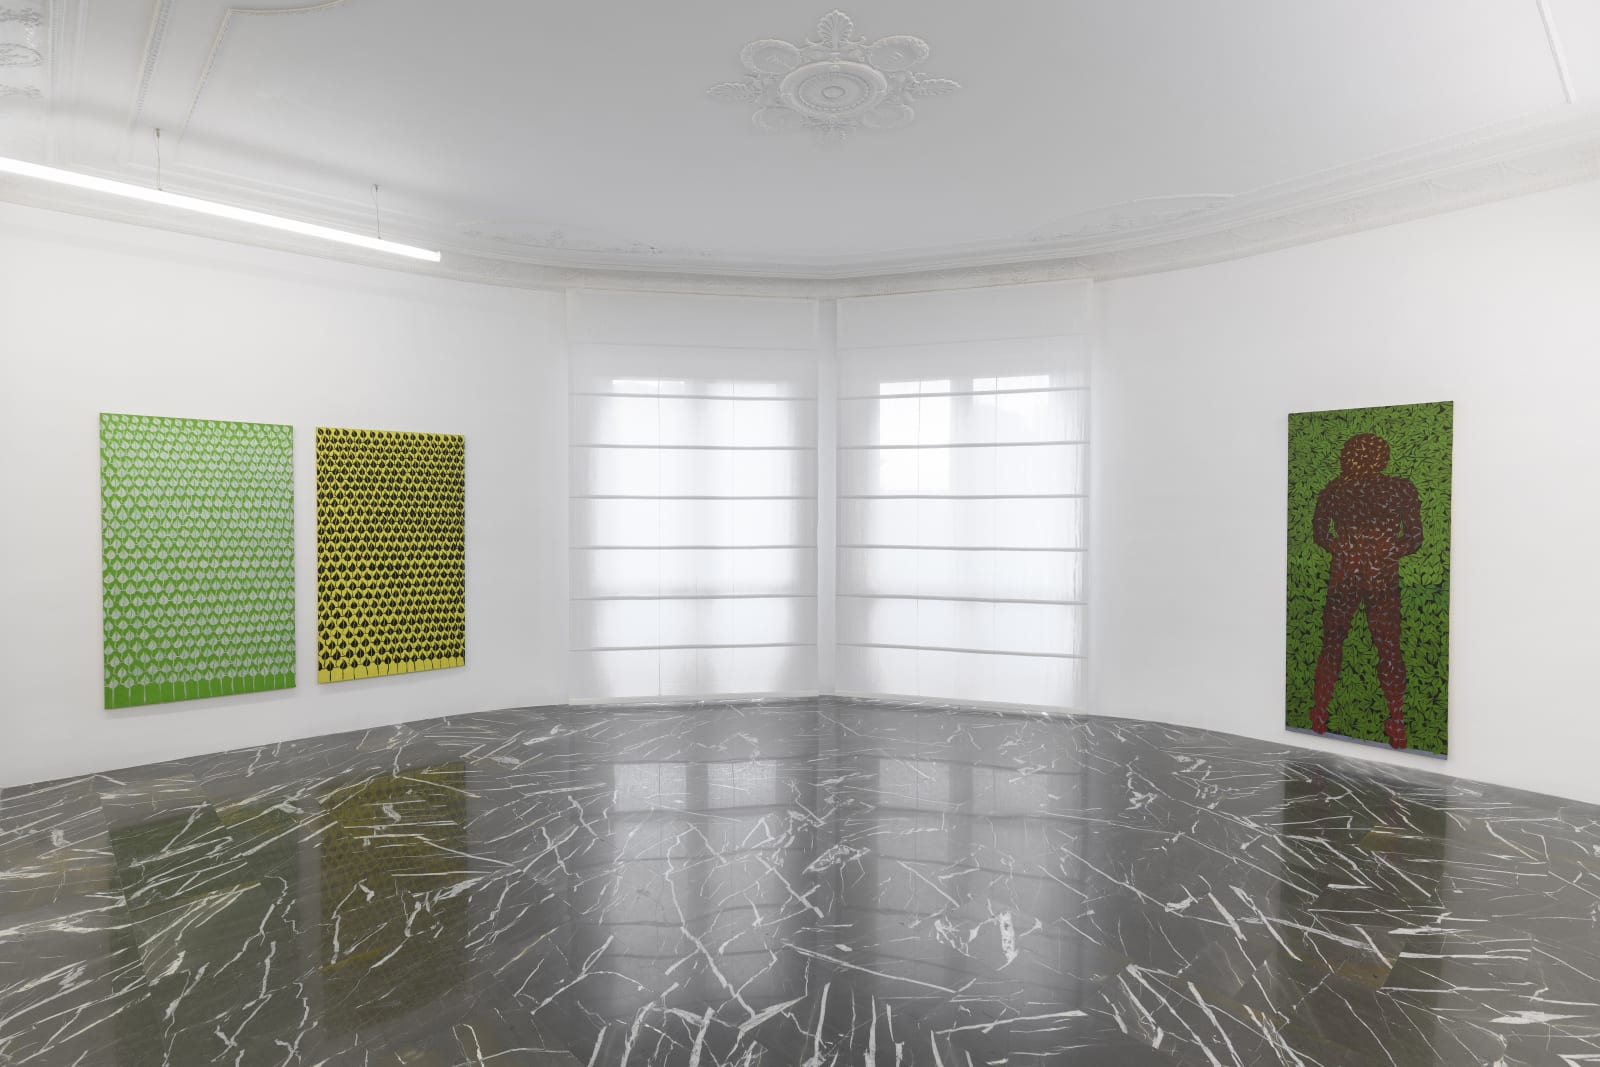 Cesare Tacchi. Una casa di foglie e fogli, curated by Daniela Bigi, installation views, ph. Giorgio Benni